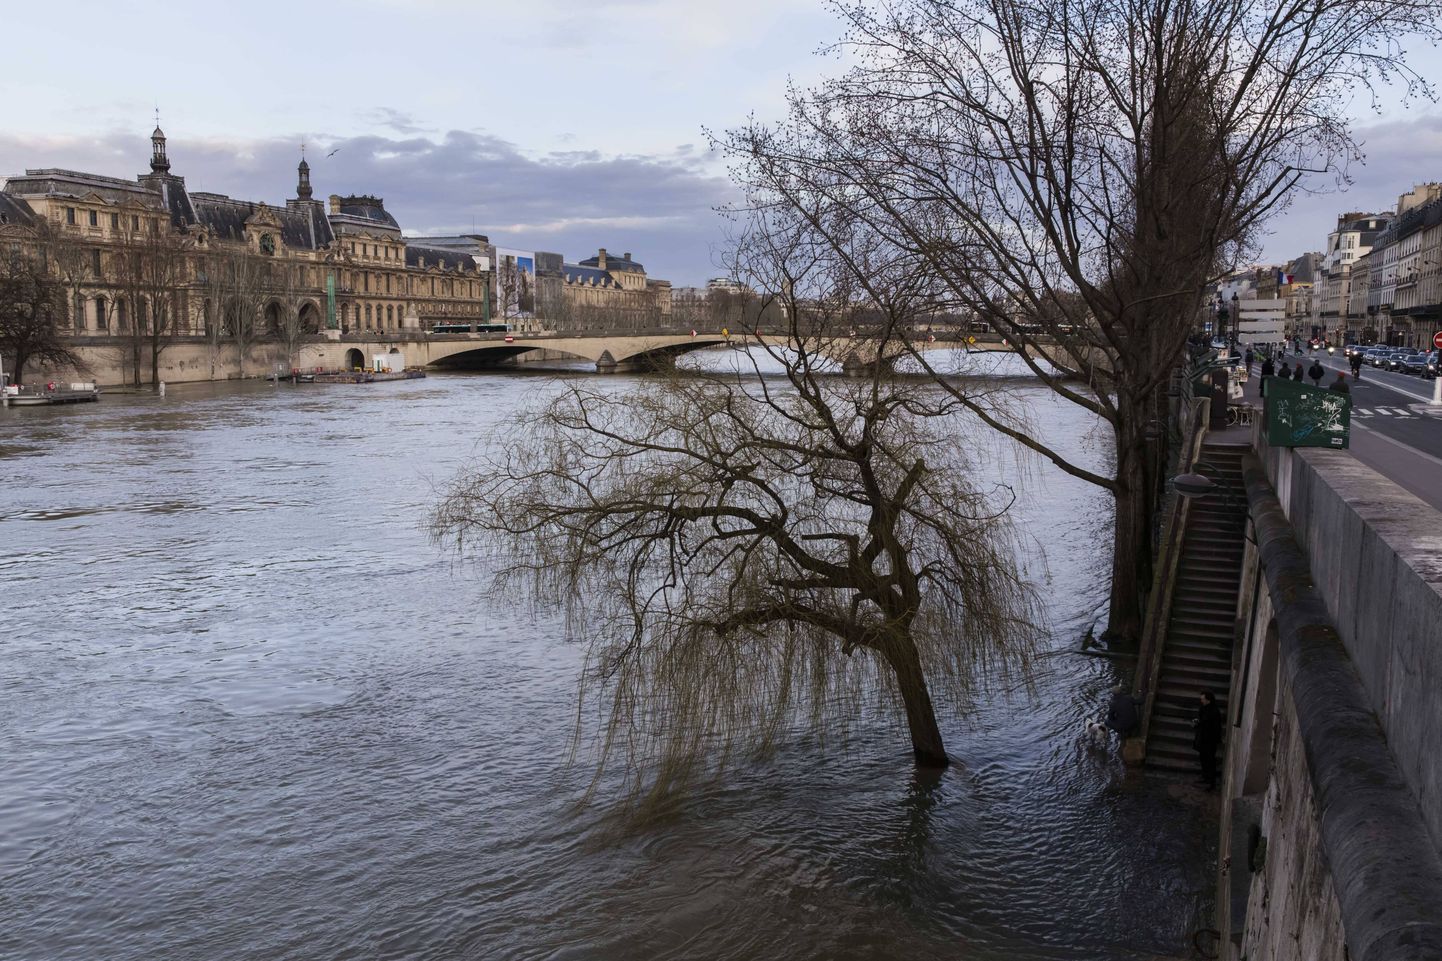 Seine'i jõe veetase on paduvihmade järel ohtlikult kõrgele tõusnud.